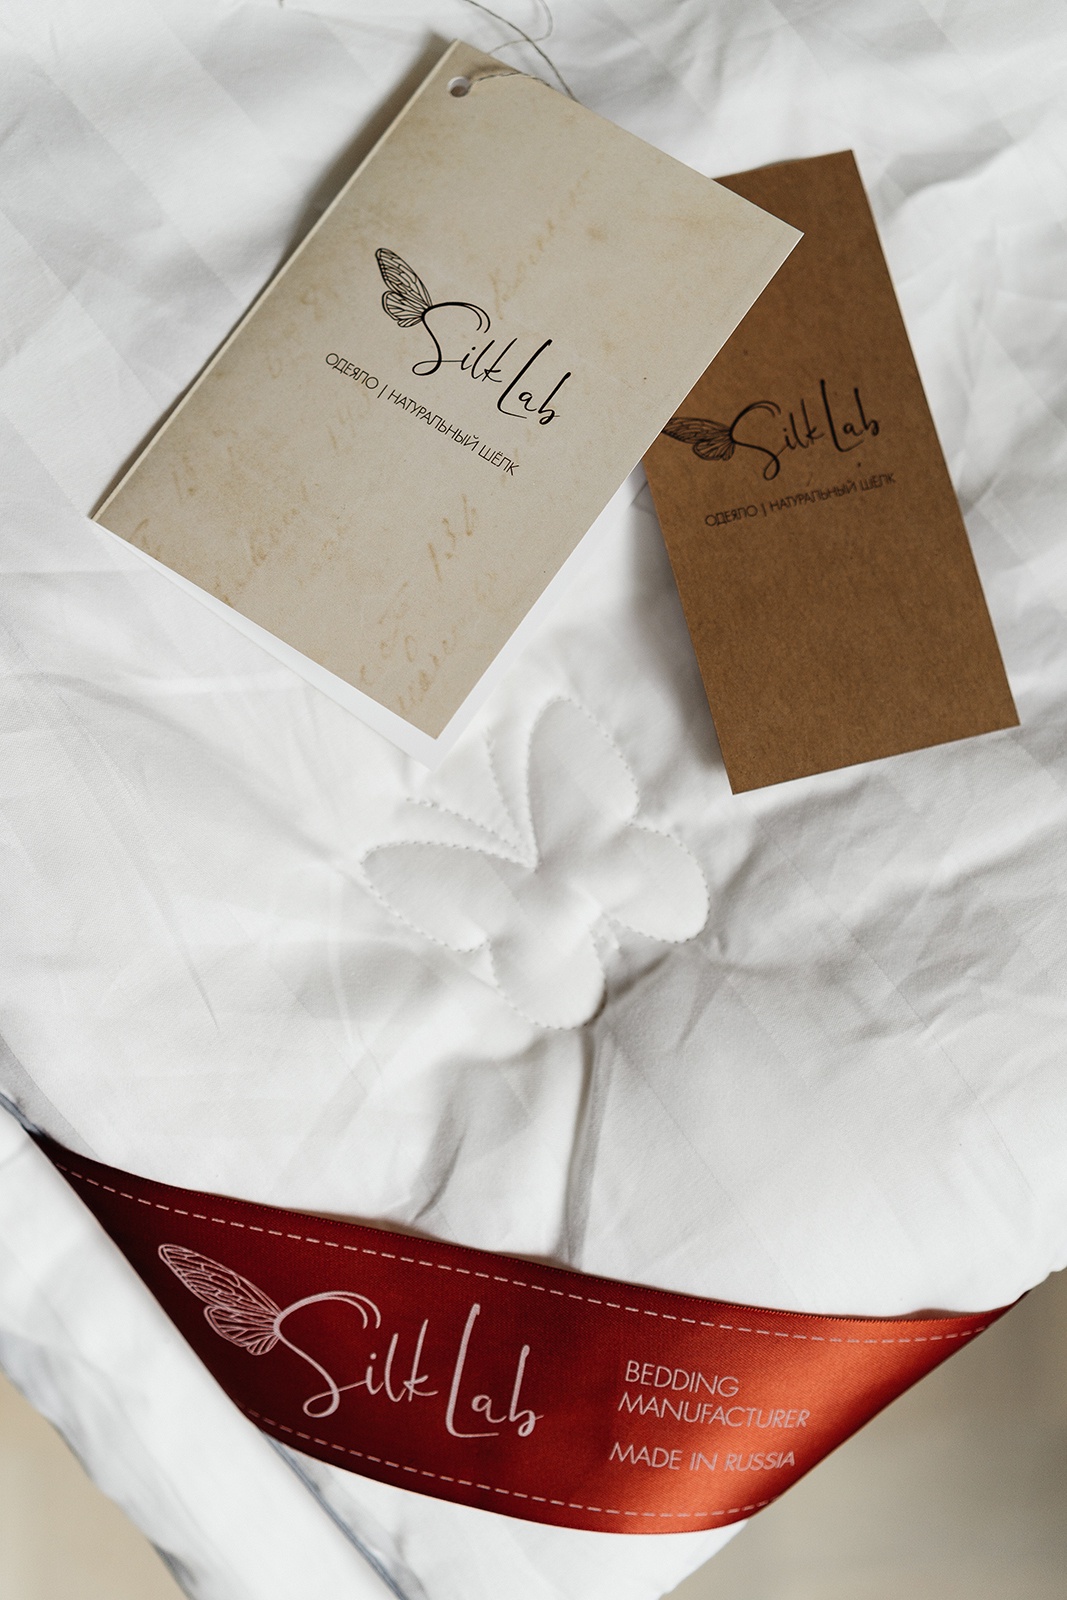 фото Шелковое одеяло Silk Lab "Silver", 200x220, Теплое, ткань чехла сатин (Россия)